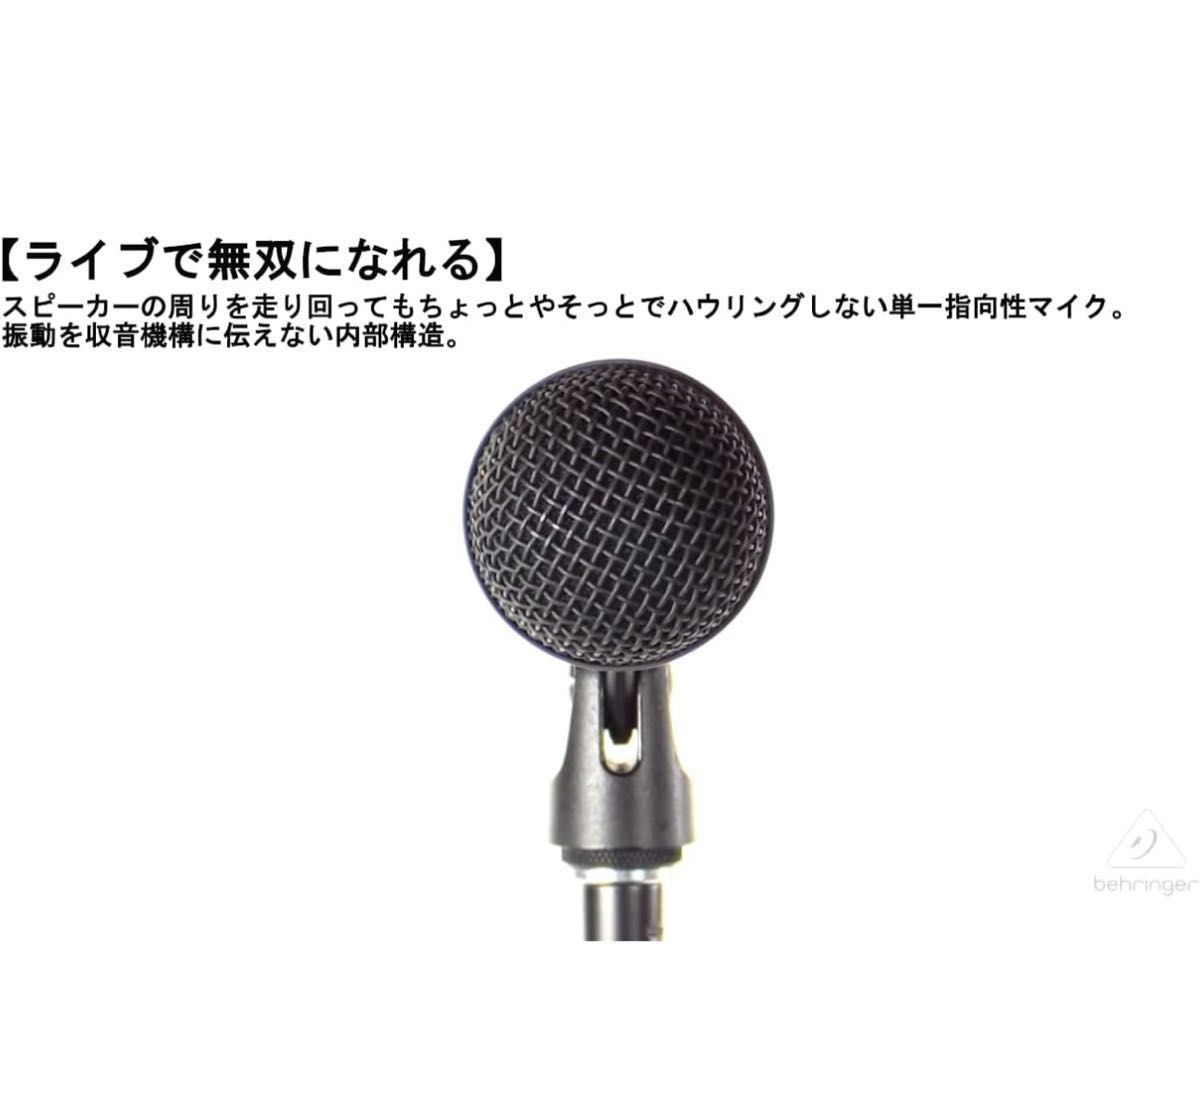 【美品】BEHRINGER XM8500 ダイナミック ボーカル マイク